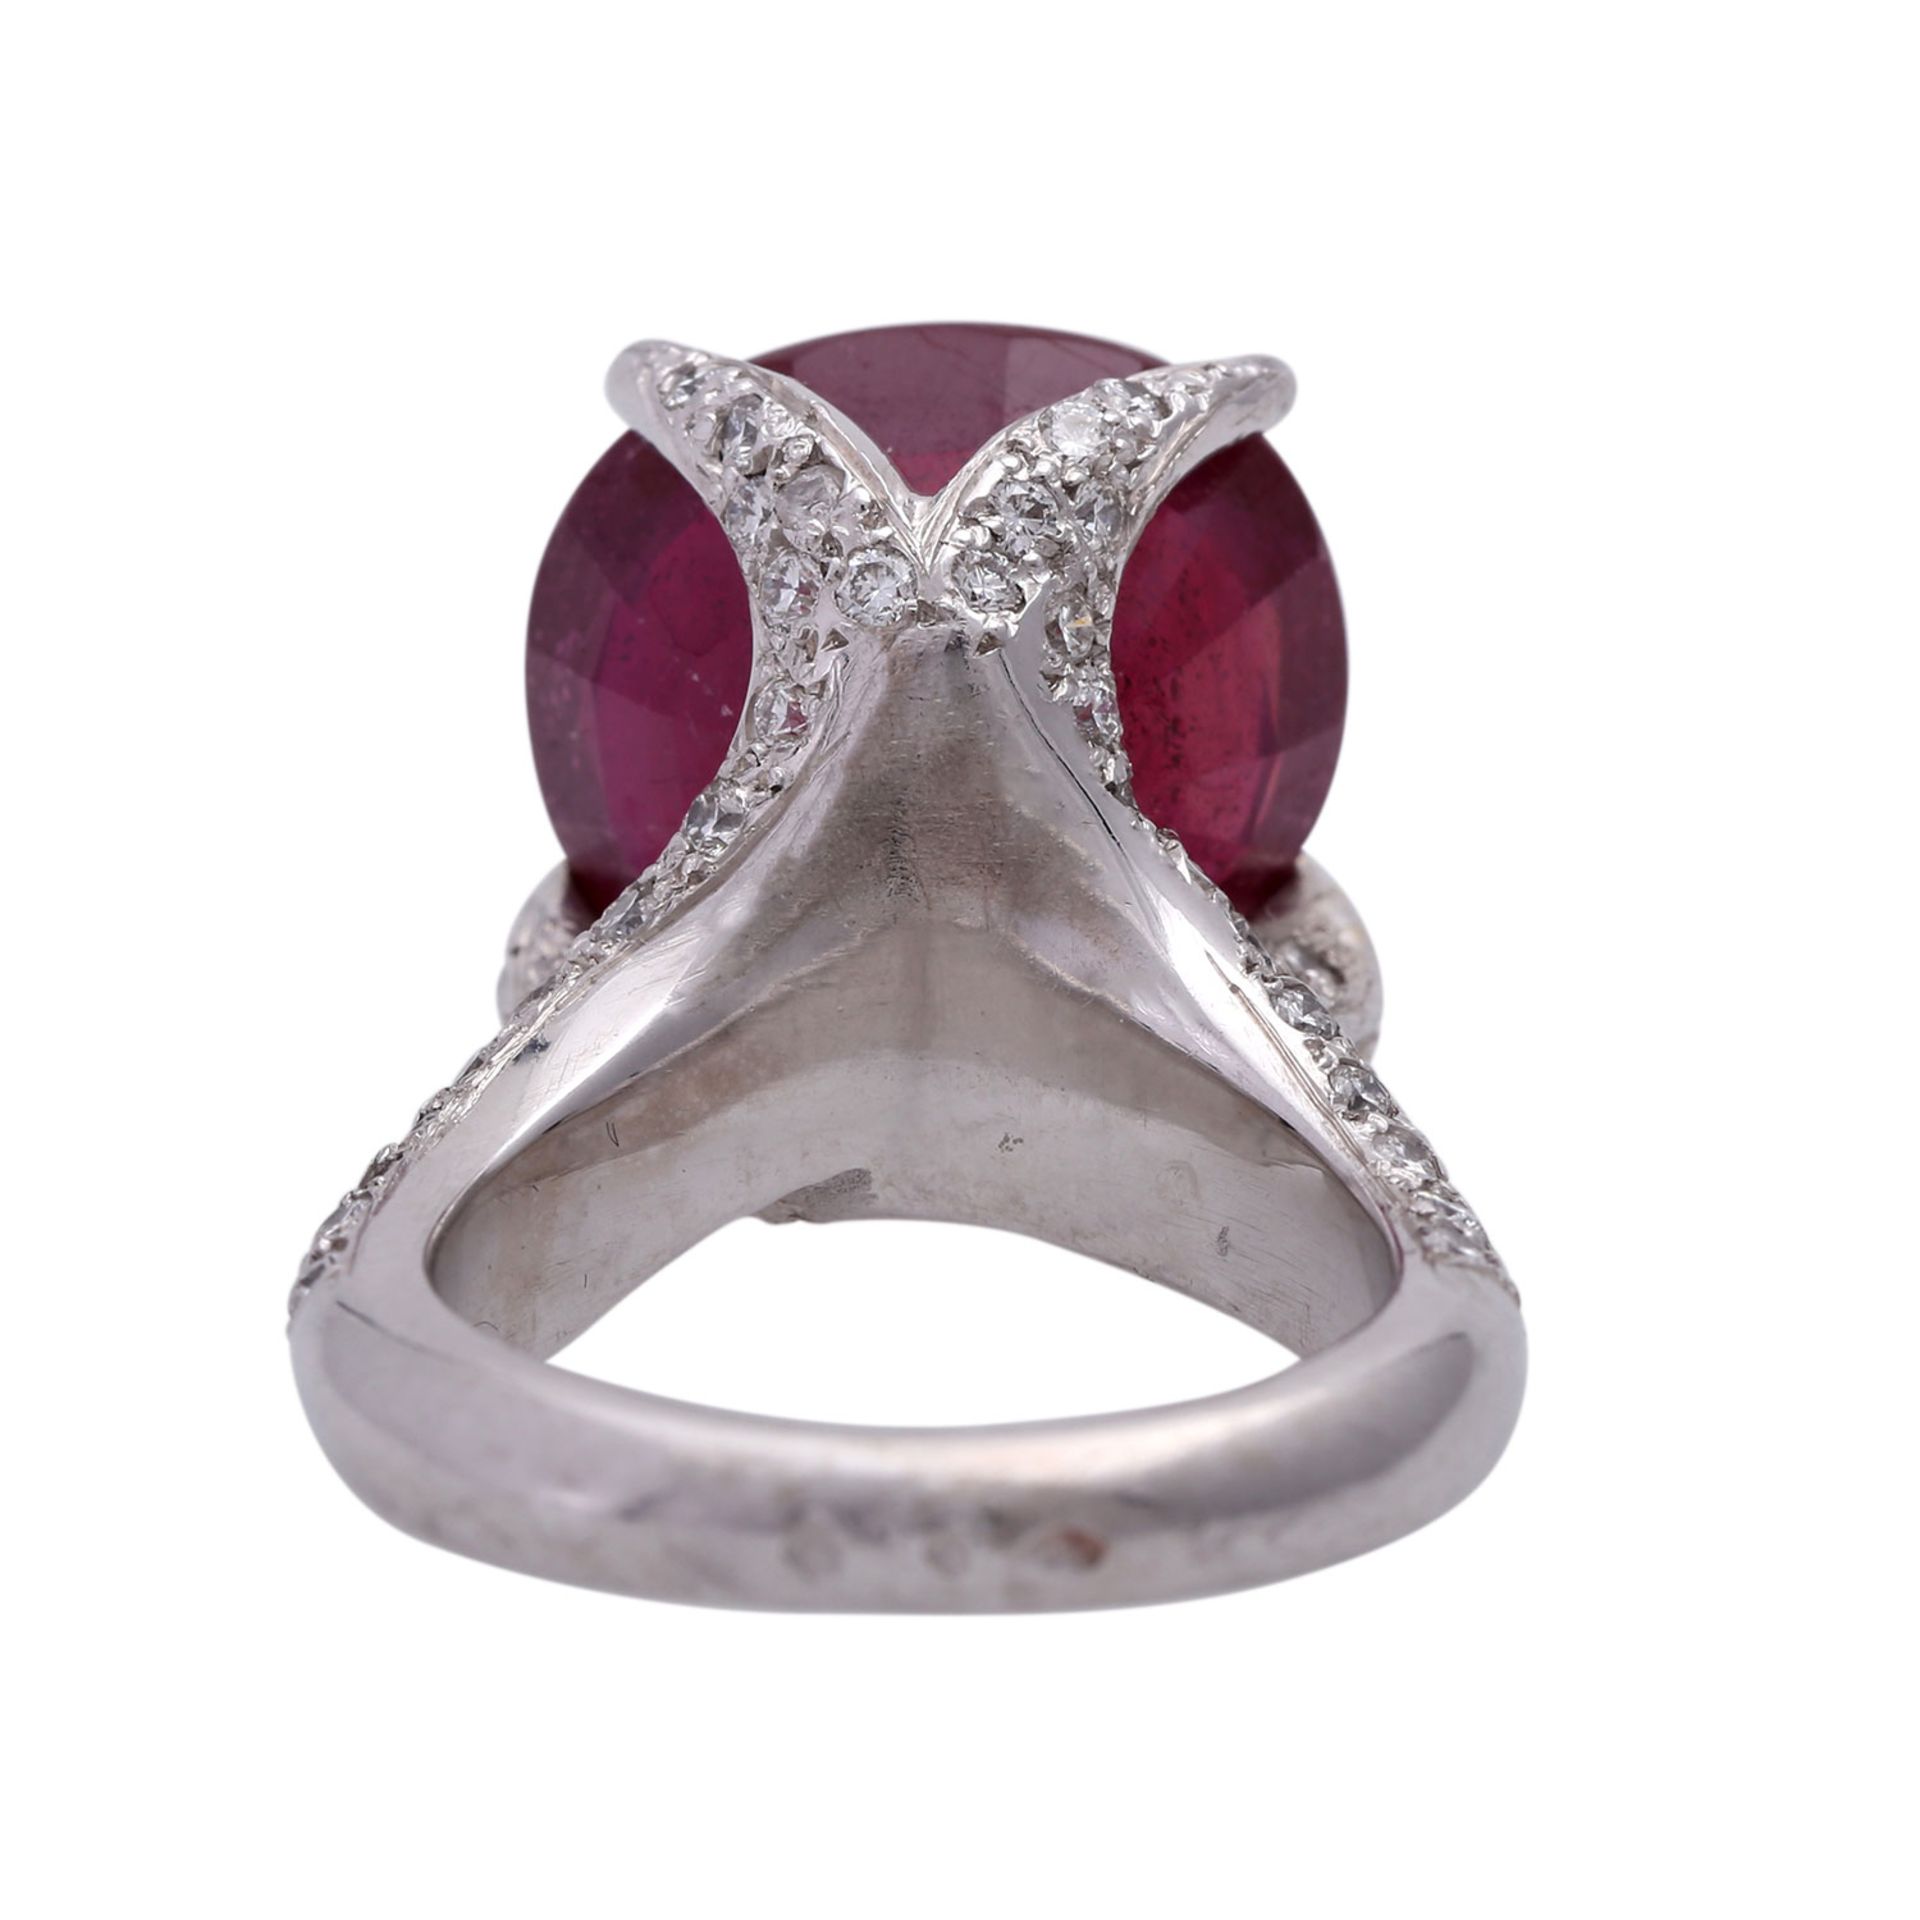 Ring mit Brillanten und Rubinca. 15 x 13,5 mm, rechteckig antik facettiert, reinheitsverbessert, - Image 4 of 4